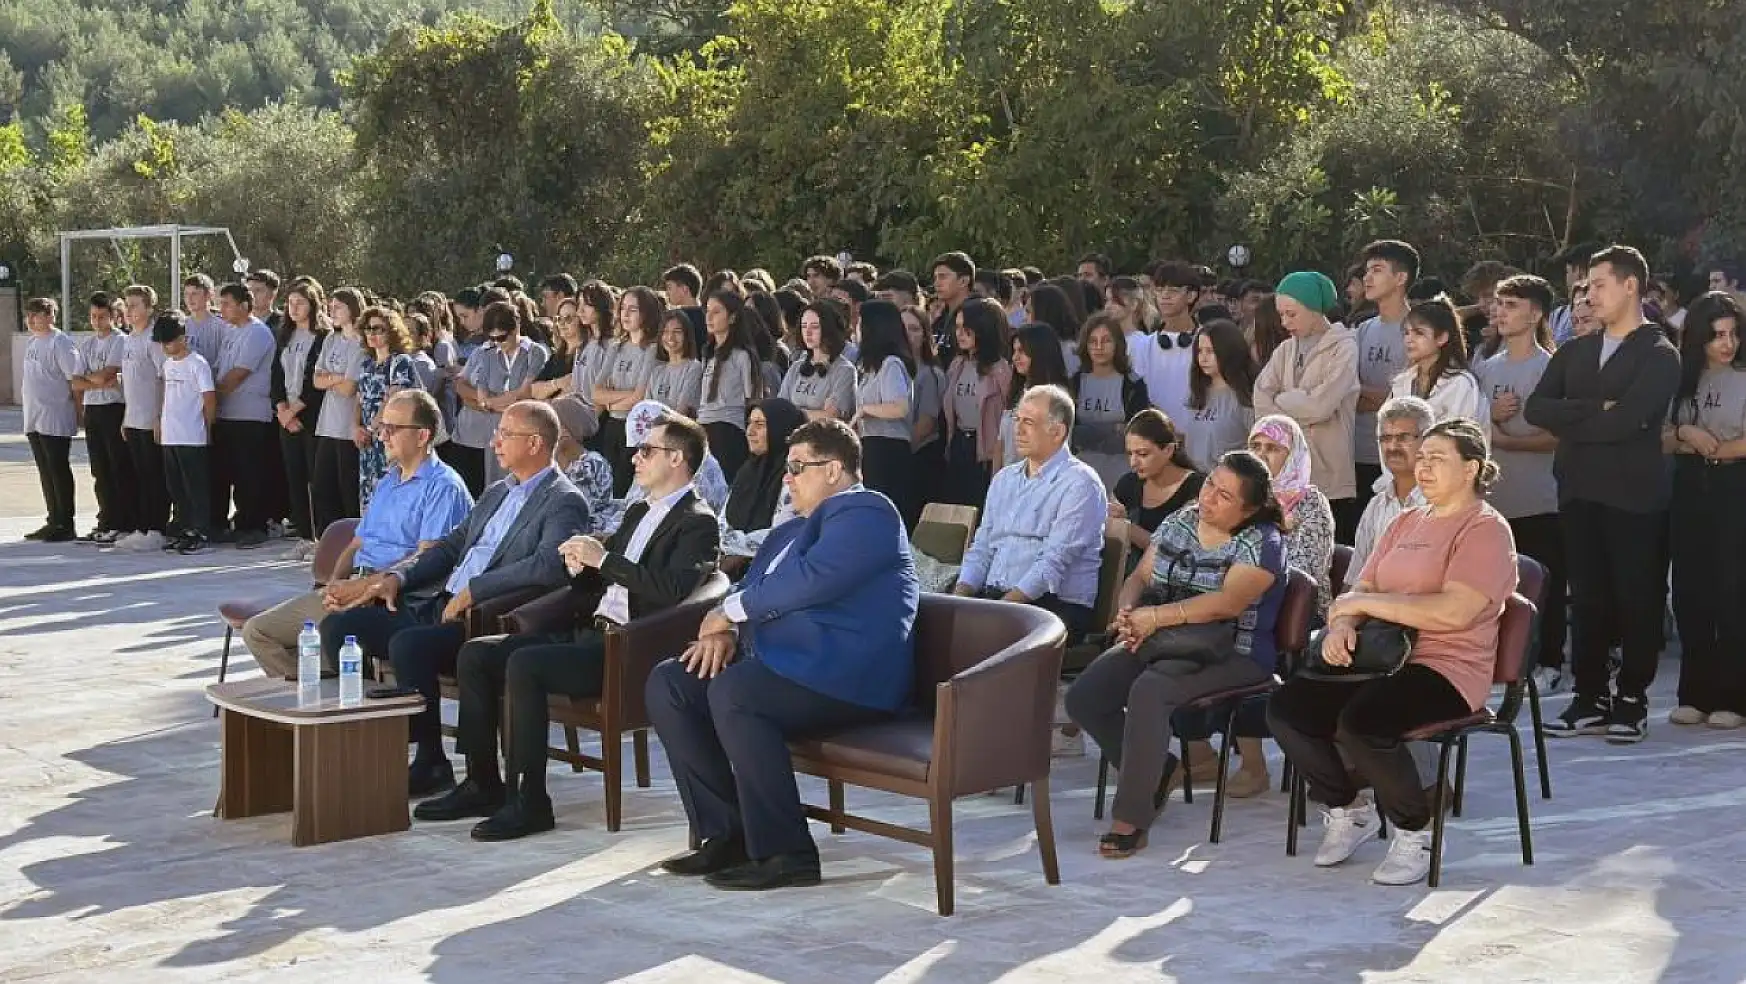 Hüseyin Ercan Ermaş Mermer Anadolu Lisesinde açılış töreni gerçekleştirildi